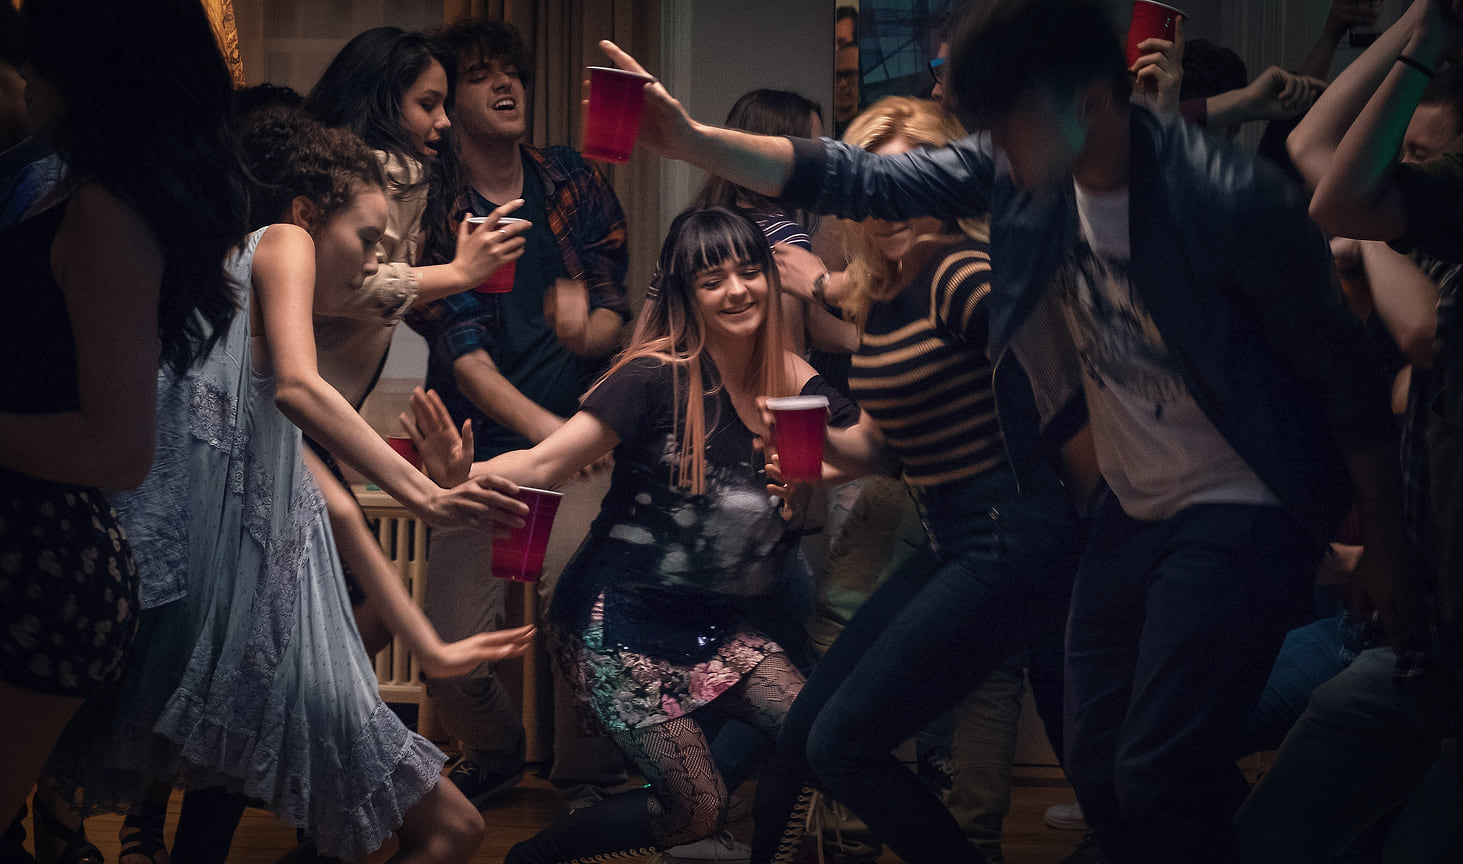 Мэйси Уильямс в молодежном ромкоме «30 безумных желаний», где она сыграла с Асой Баттерфилд, прославившемся после выхода сериала «Сексуальное воспитание» и Ниной Добрев из «Дневников вампира», 2018 год.
